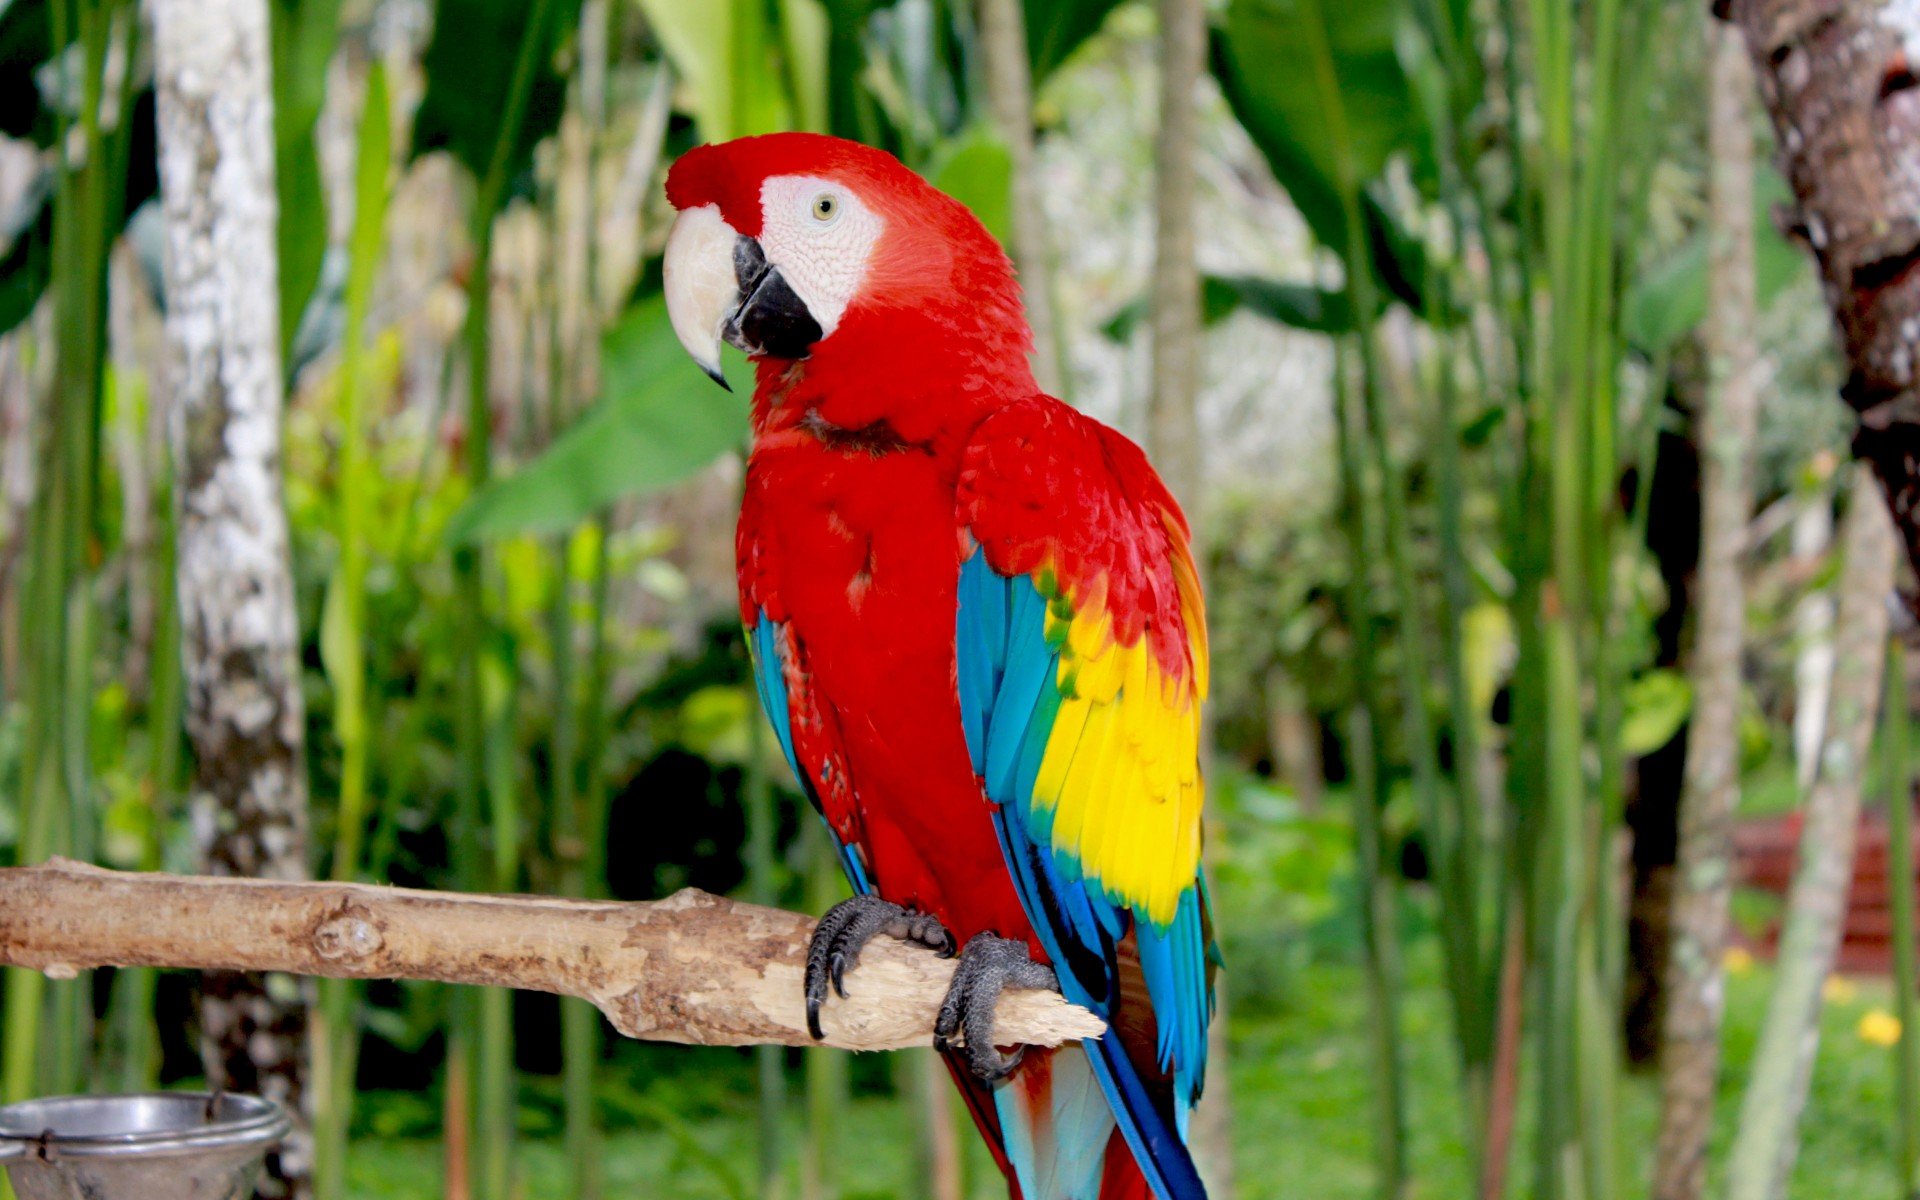 عکس زمینه HD از طوطی ماکائو قرمز رنگ با بال زرد و آبی چشم نواز